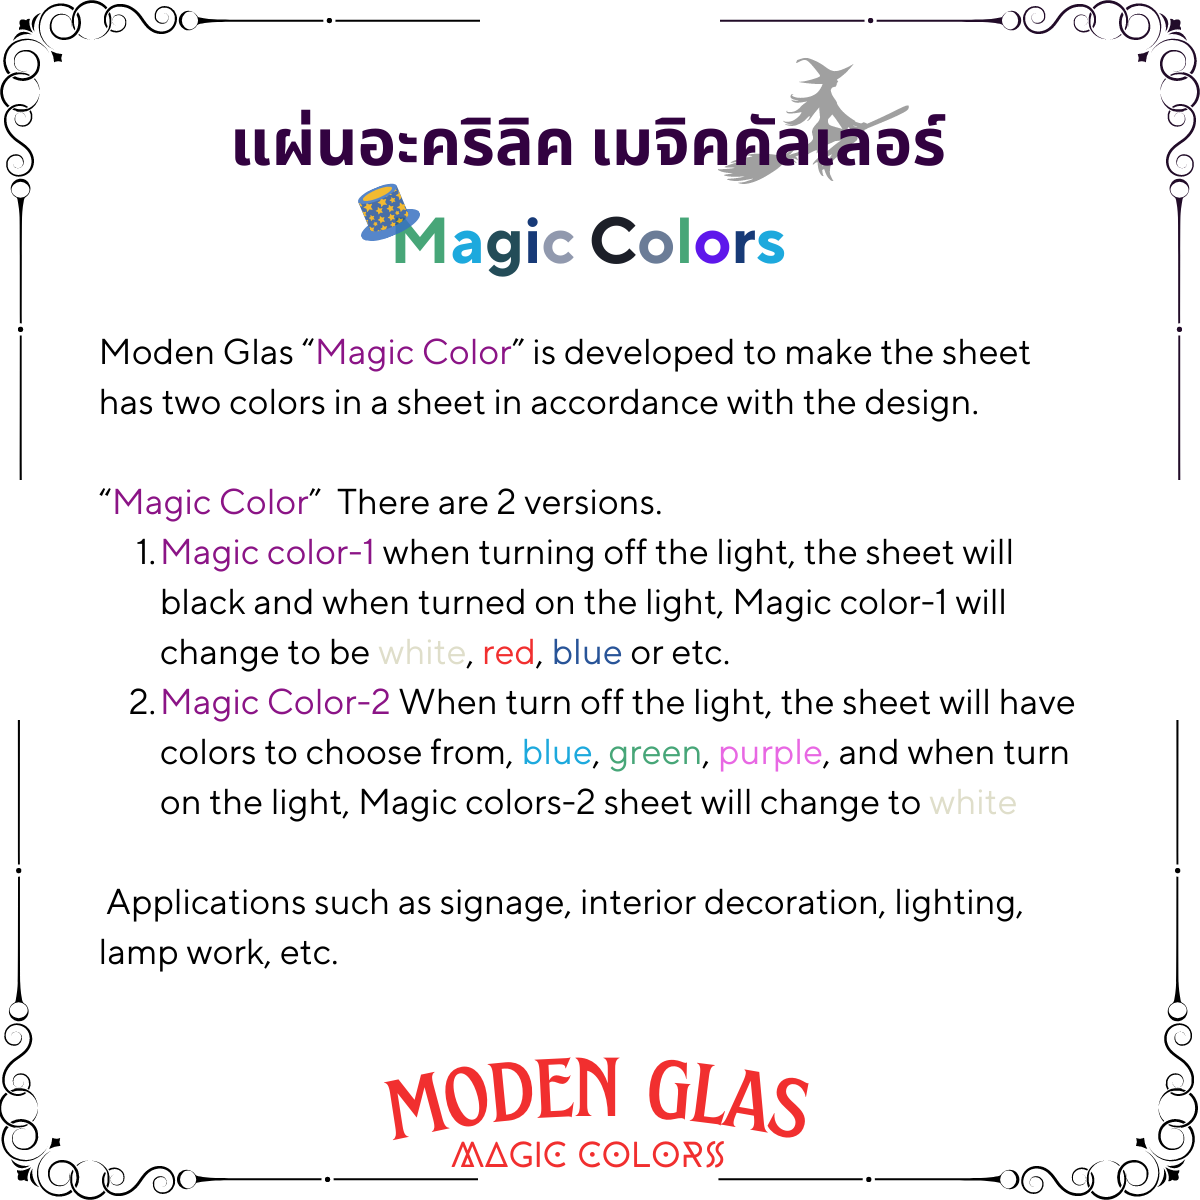 Moden glas magic colors